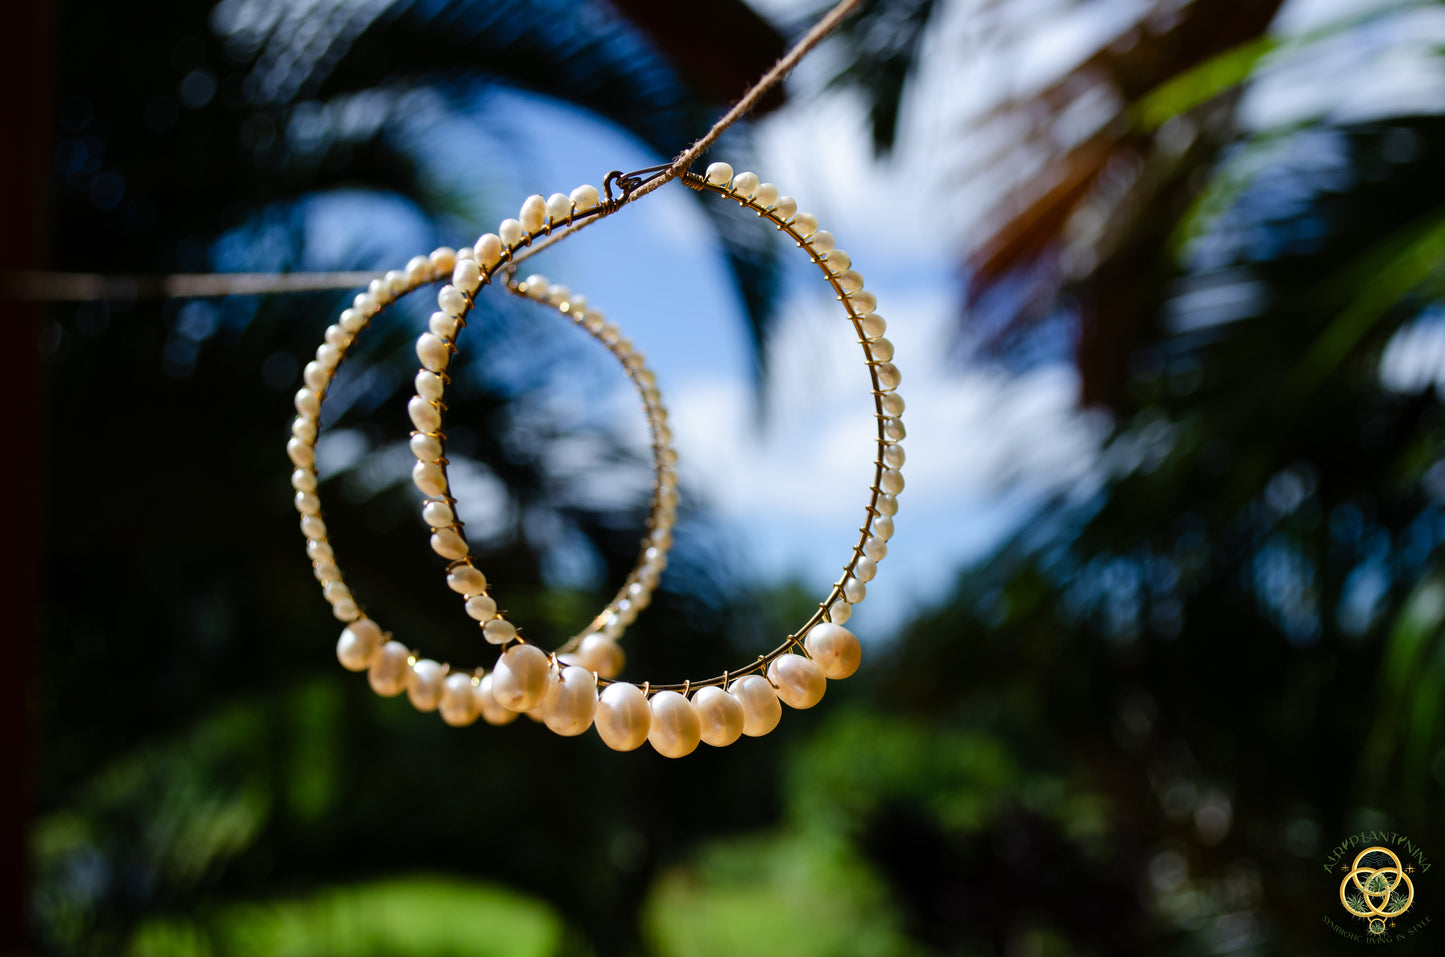 Pearl Hoop Earrings ~ Geniune Pearls (Small, Medium, Large, Many Styles)